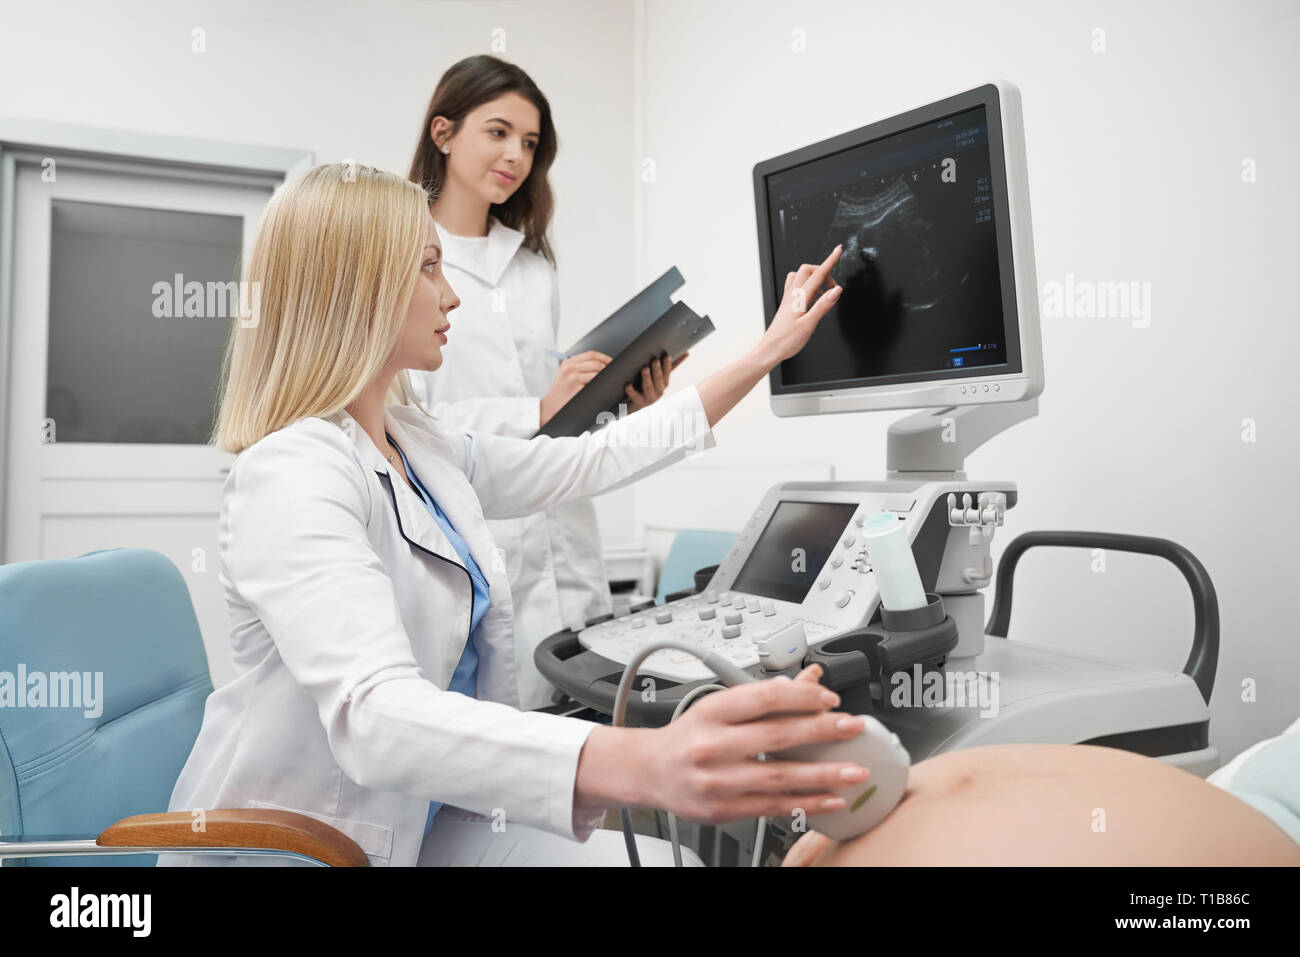 Terapista esaminando l'addome della donna gravida. Medico professionale dispositivo di trattenimento, guardando il monitor della macchina ad ultrasuoni. L'infermiera aiutando, apposita cartella, lavorando in clinica medica. Foto Stock